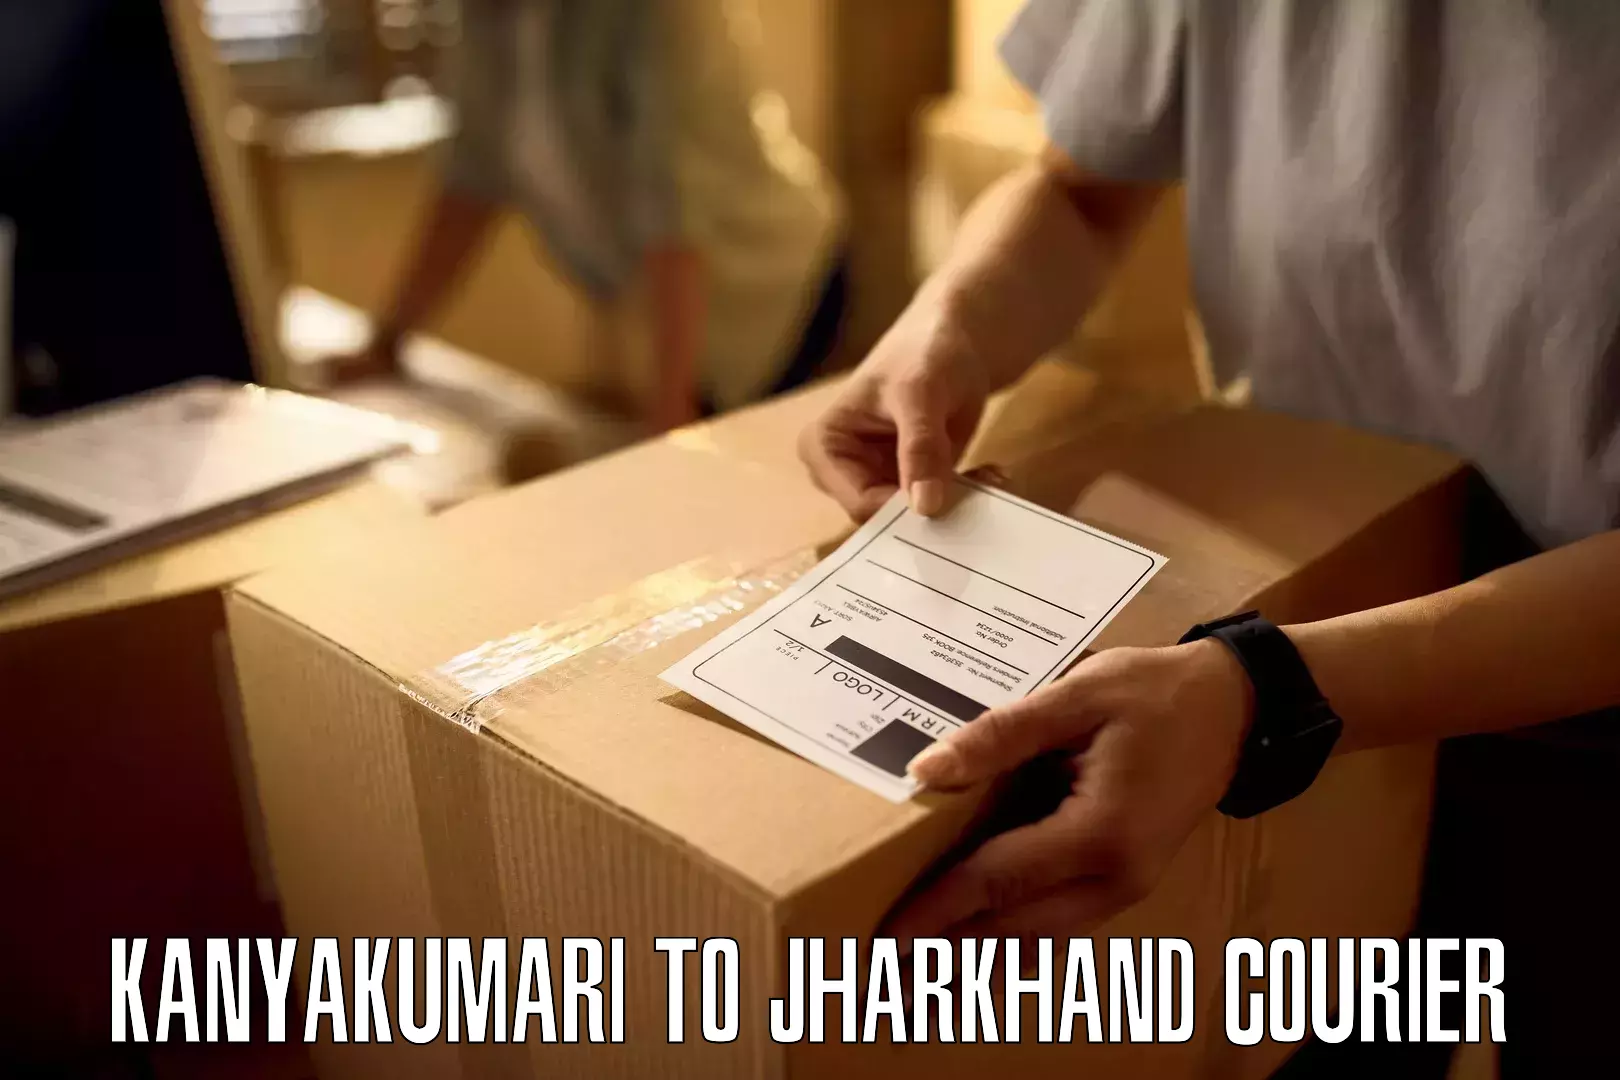 Business logistics support Kanyakumari to Dhalbhumgarh